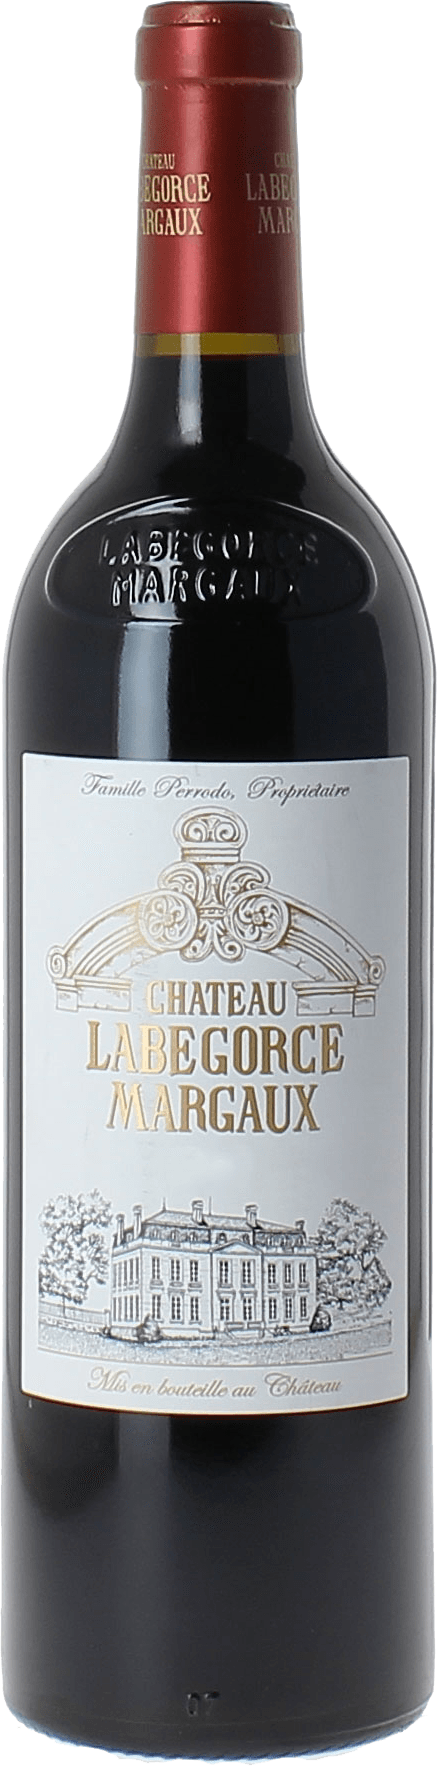 Labegorce- zede 1984  Margaux, Bordeaux rouge